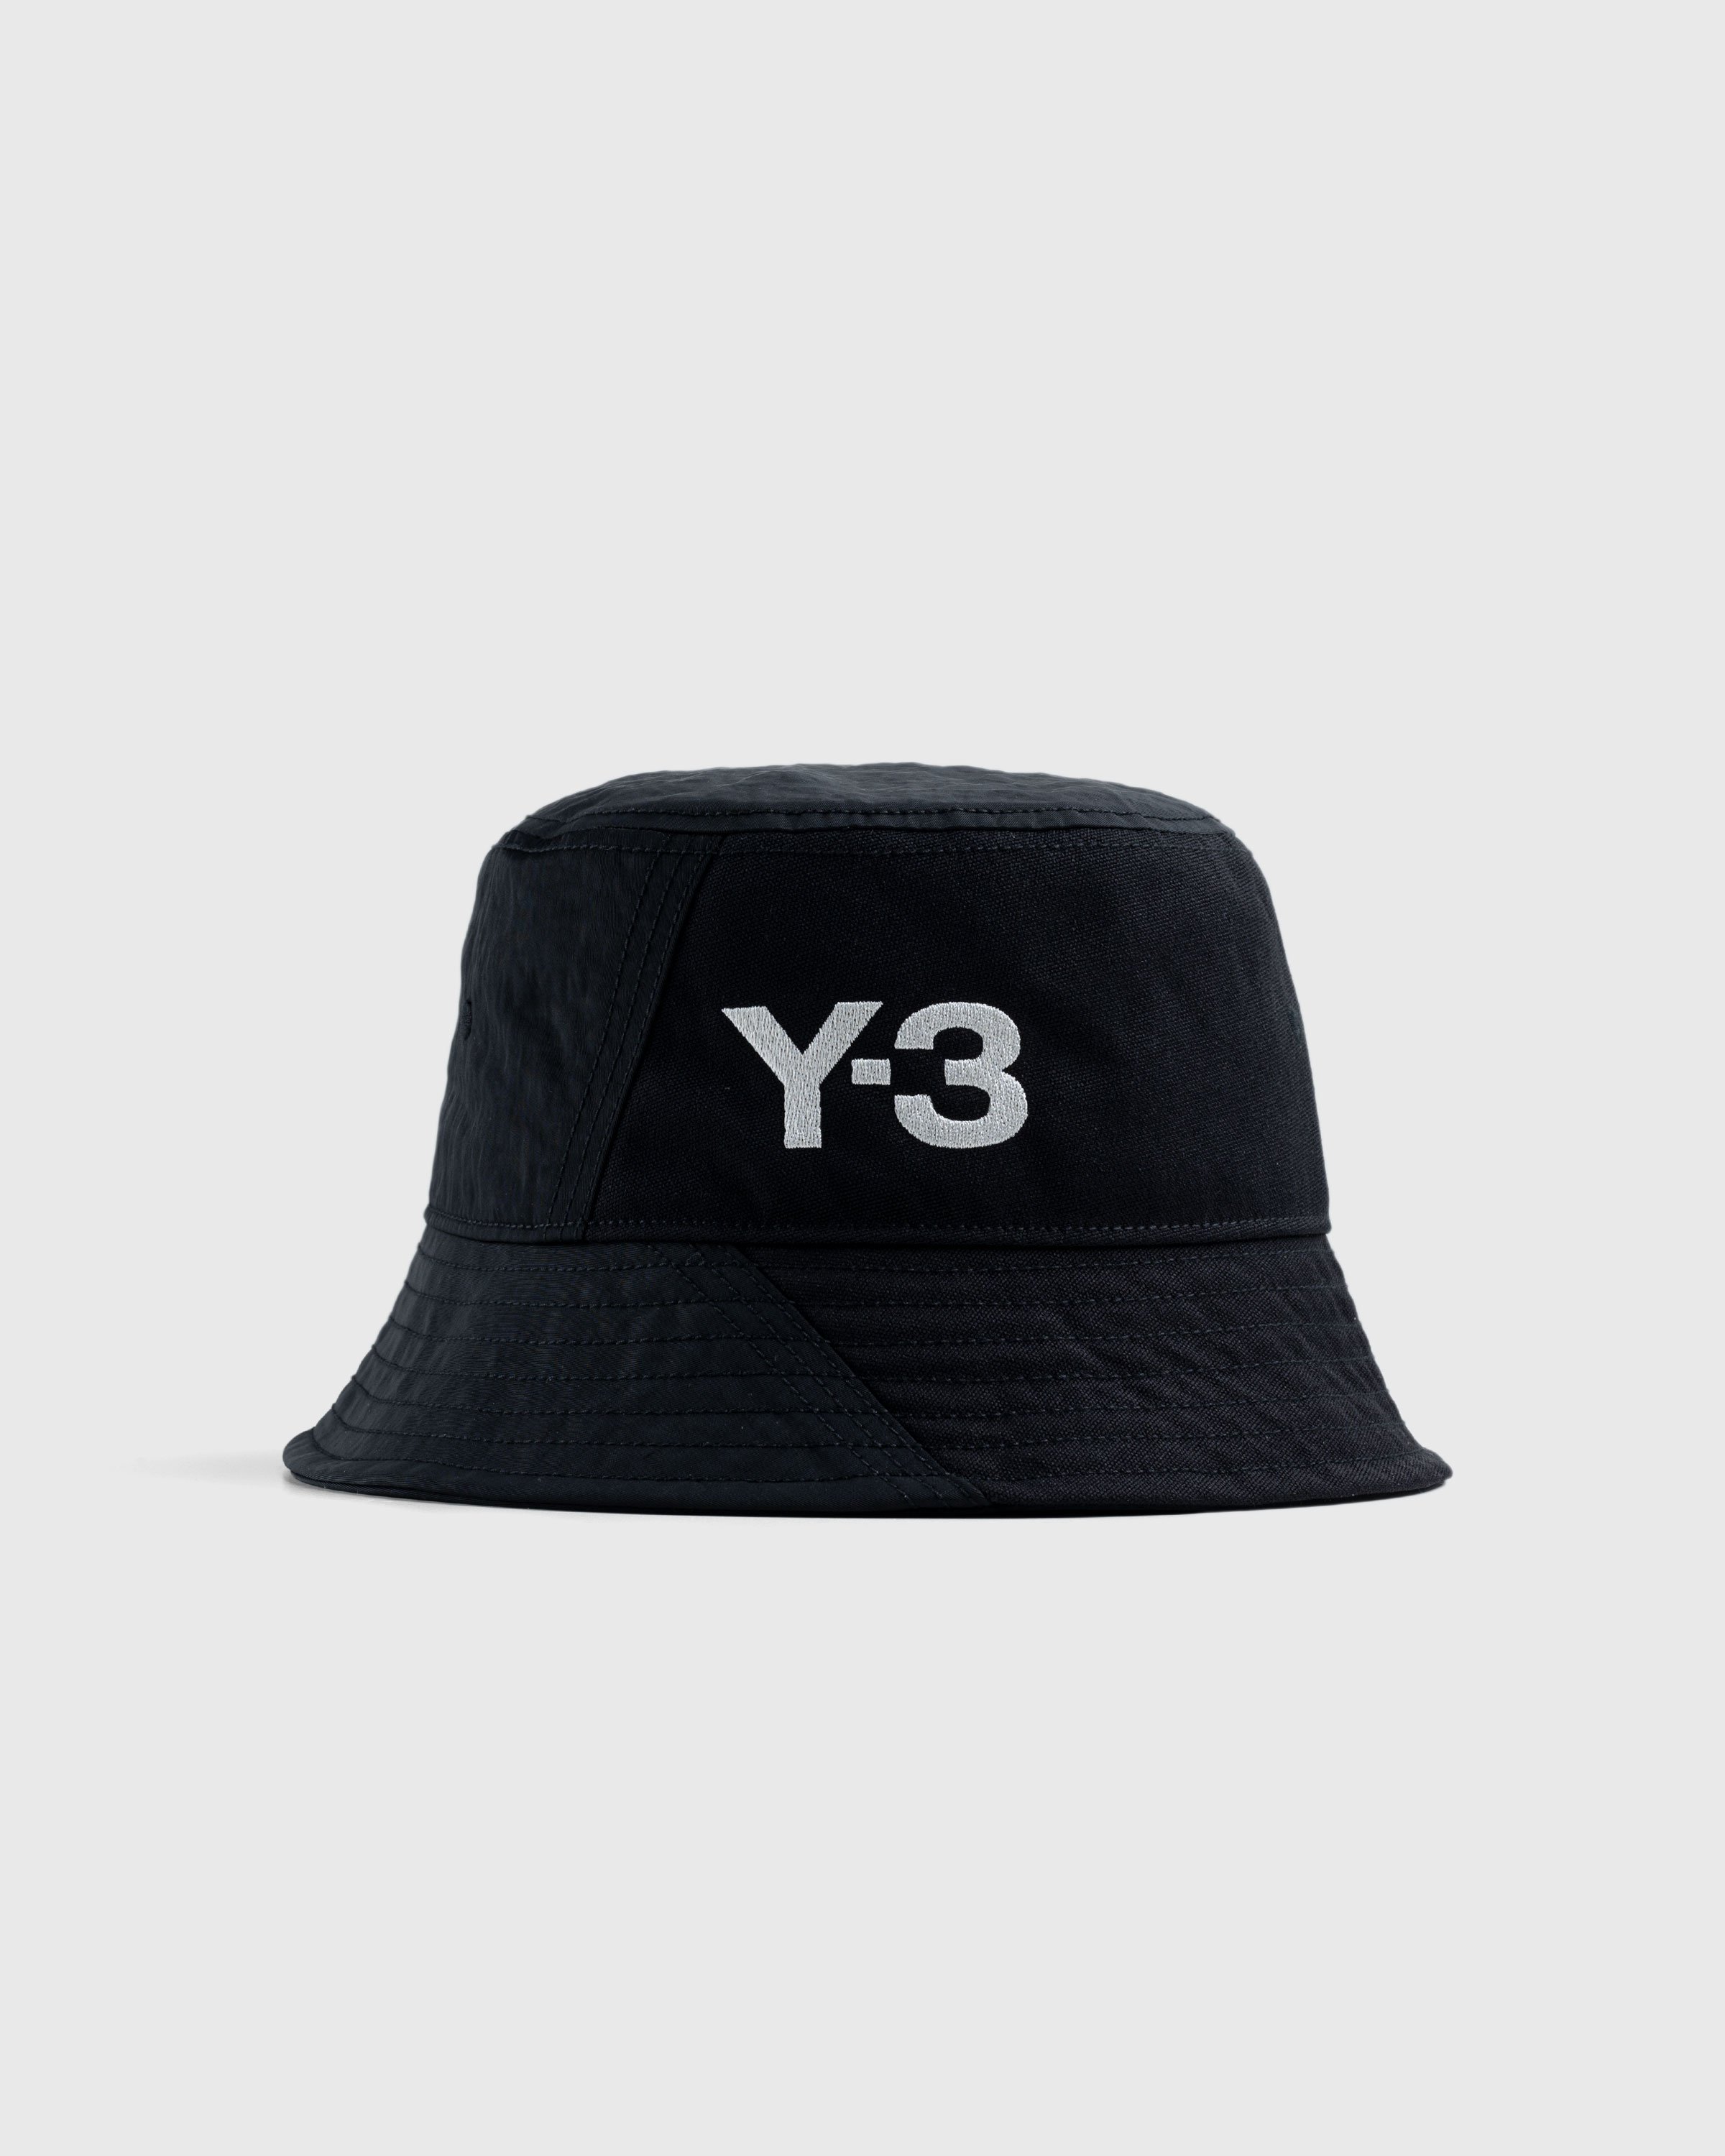 Y-3 - Bucket Hat Black - Accessories - Black - Image 1